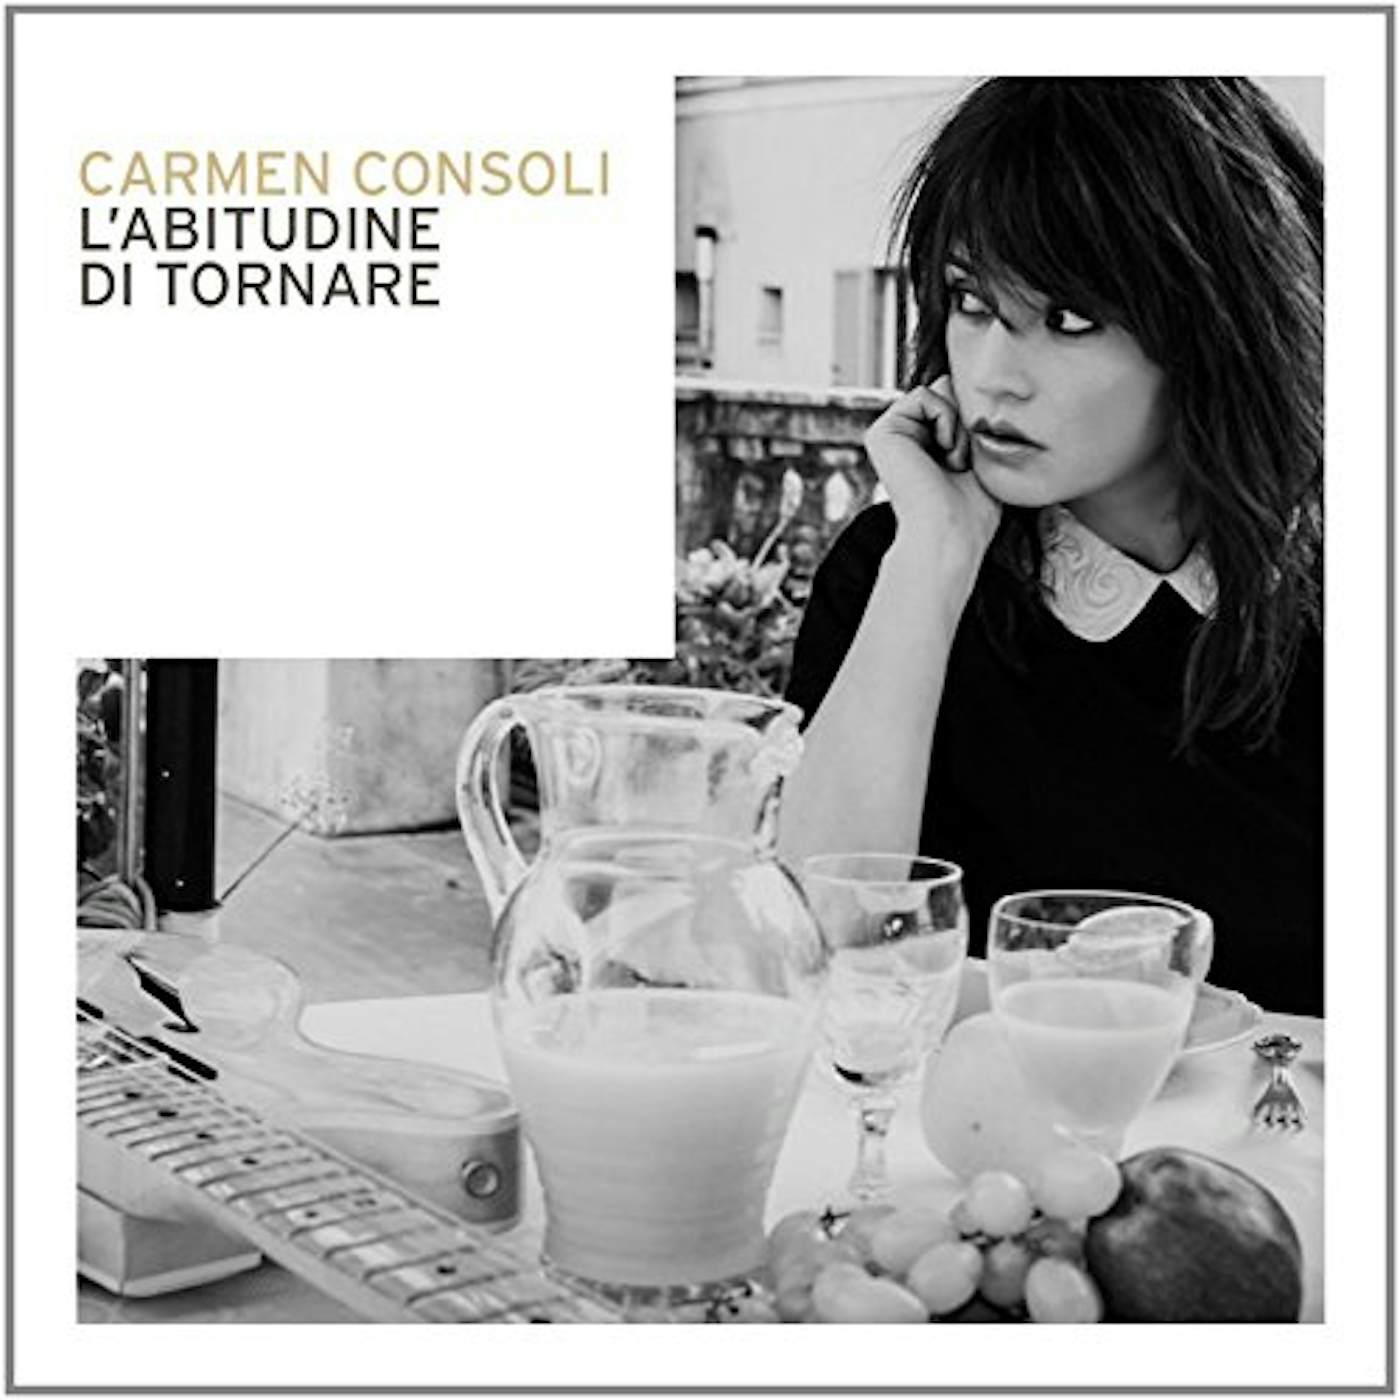 Carmen Consoli L'ABITUDINE DI TORNARE Vinyl Record - Italy Release